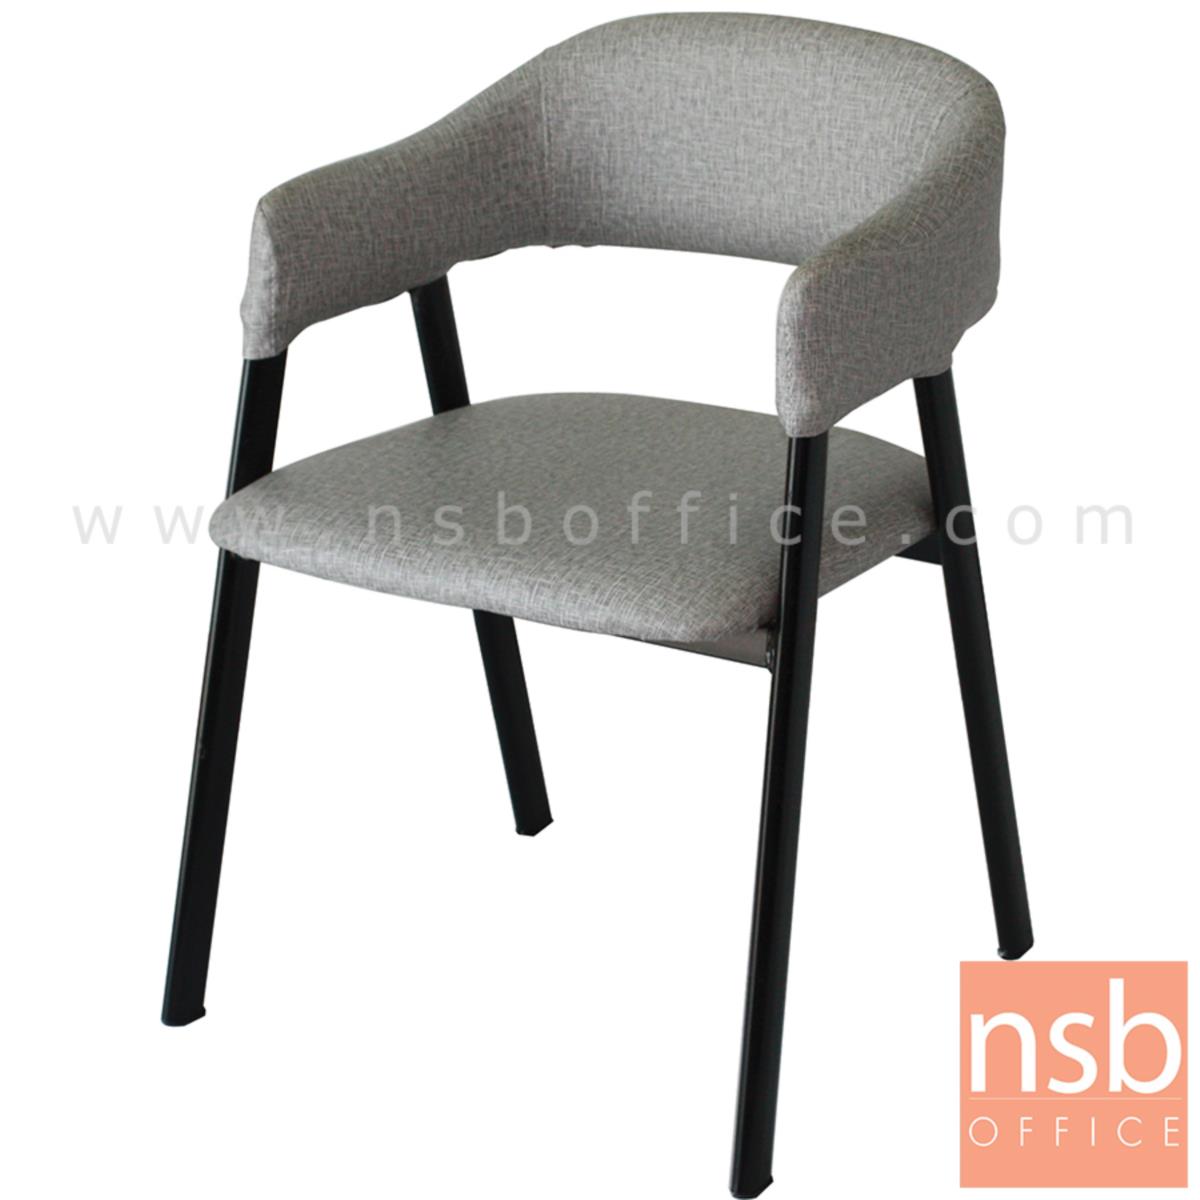 B29A295:เก้าอี้โมเดิร์นหนังเทียม รุ่น Gable (เกเบิล) ขนาด 50W cm. โครงขาไม้